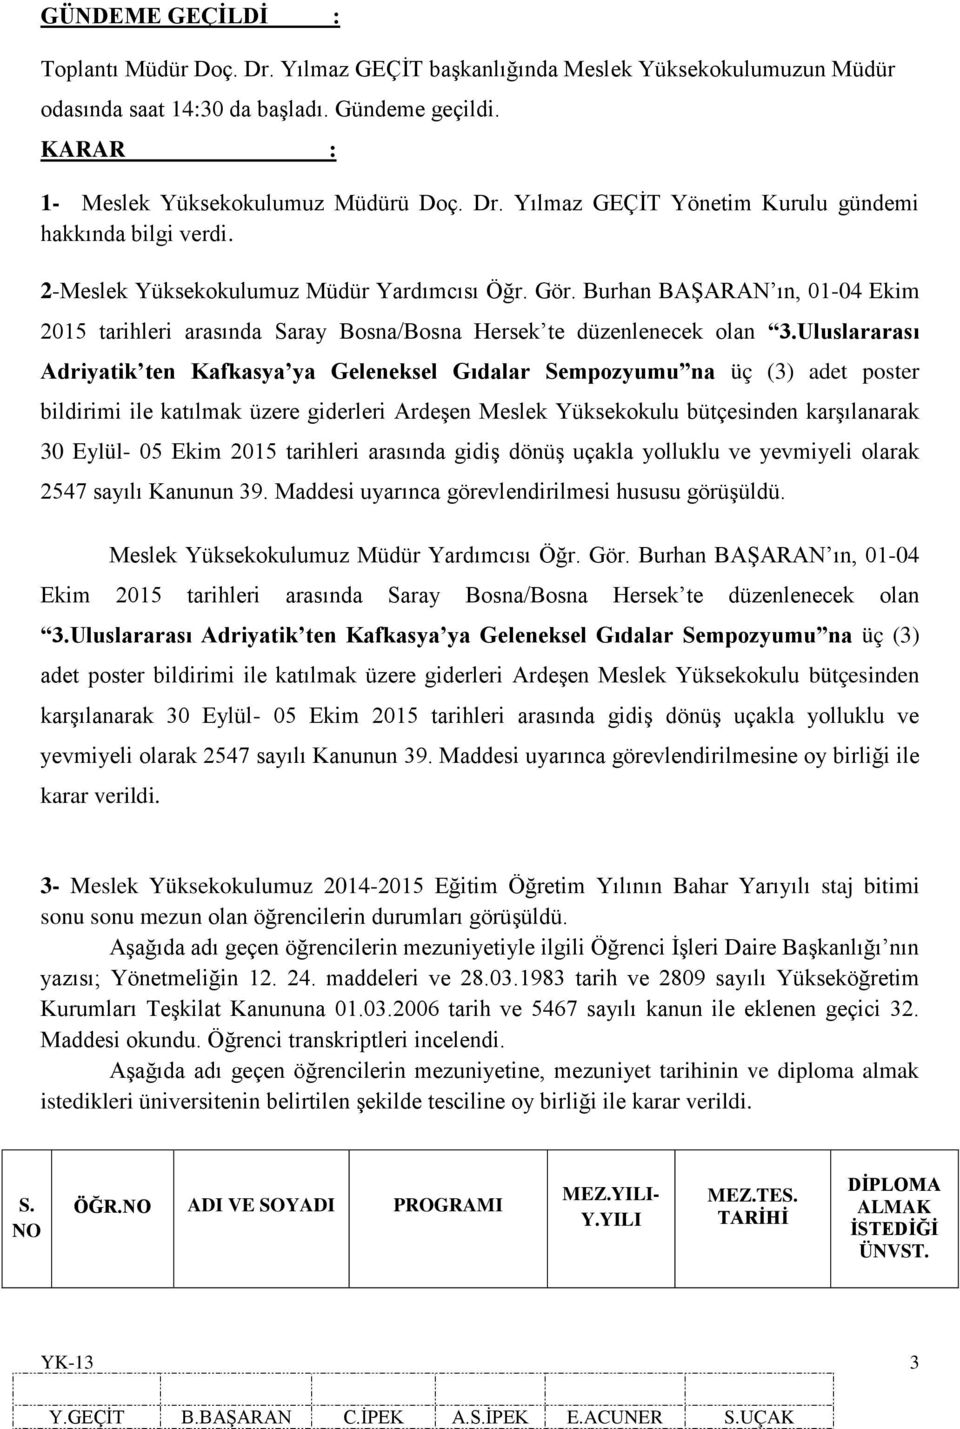 Uluslararası Adriyatik ten Kafkasya ya Geleneksel Gıdalar Sempozyumu na üç (3) adet poster bildirimi ile katılmak üzere giderleri Ardeşen Meslek Yüksekokulu bütçesinden karşılanarak 30 Eylül- 05 Ekim